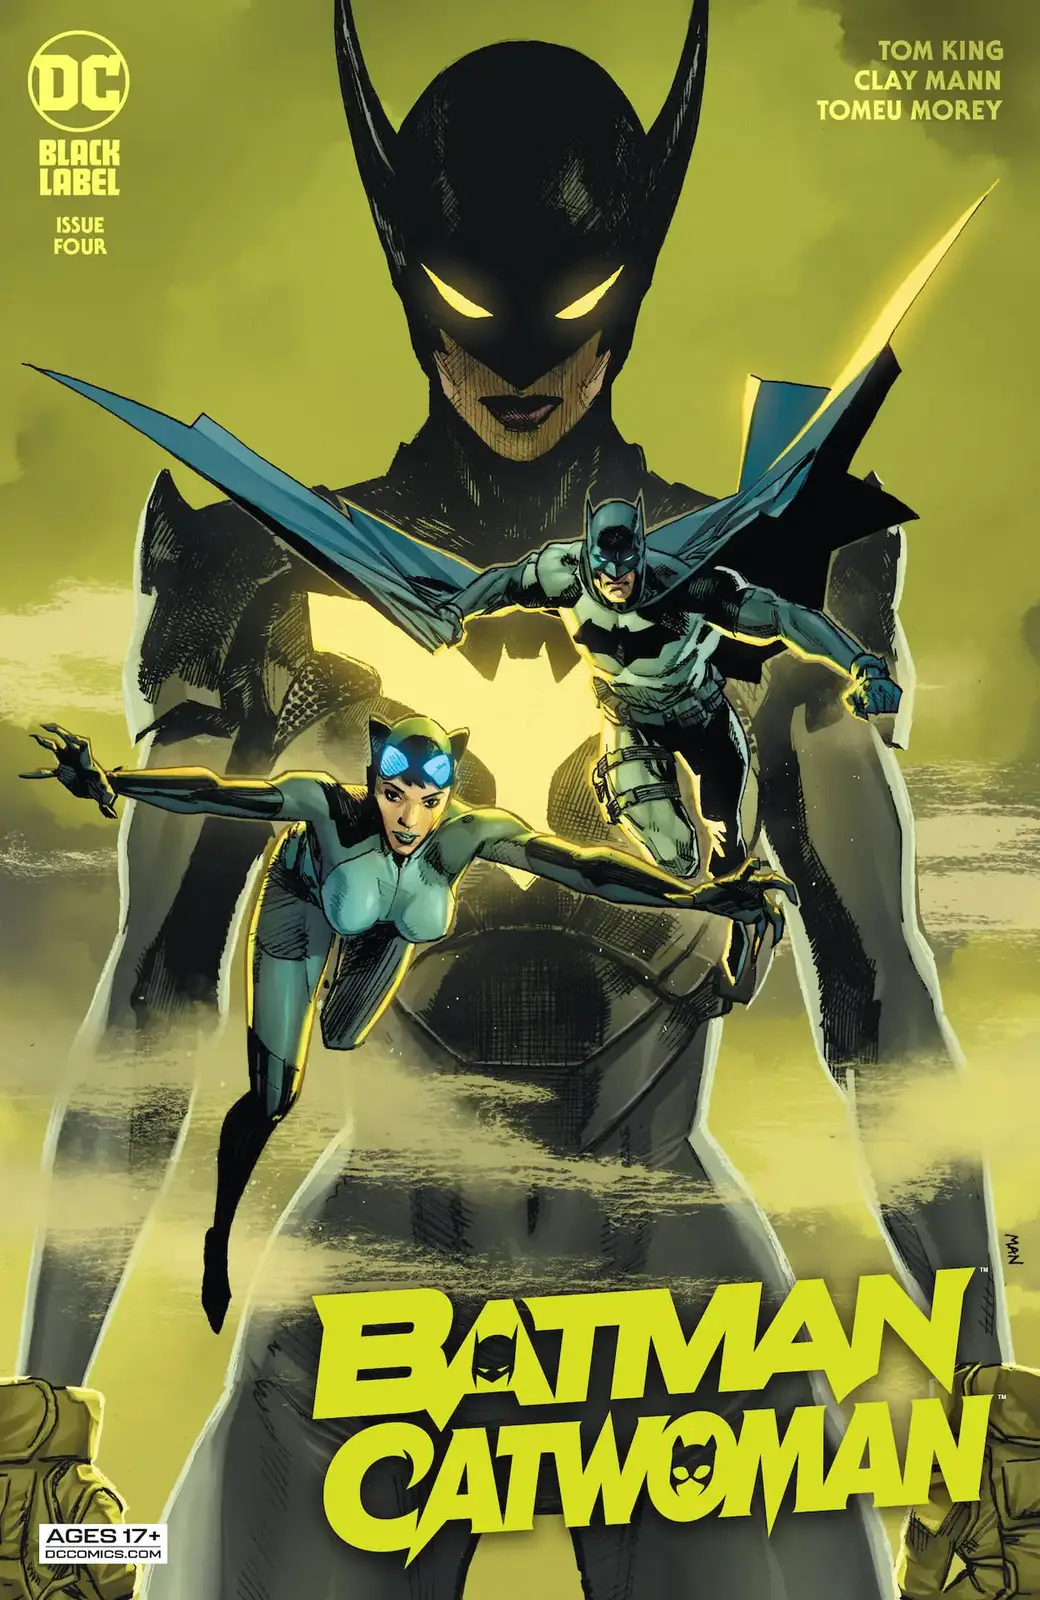 2020 DC Comics A cvr main Clay Mann releasing 12/02/2020 Batman Catwoman #2